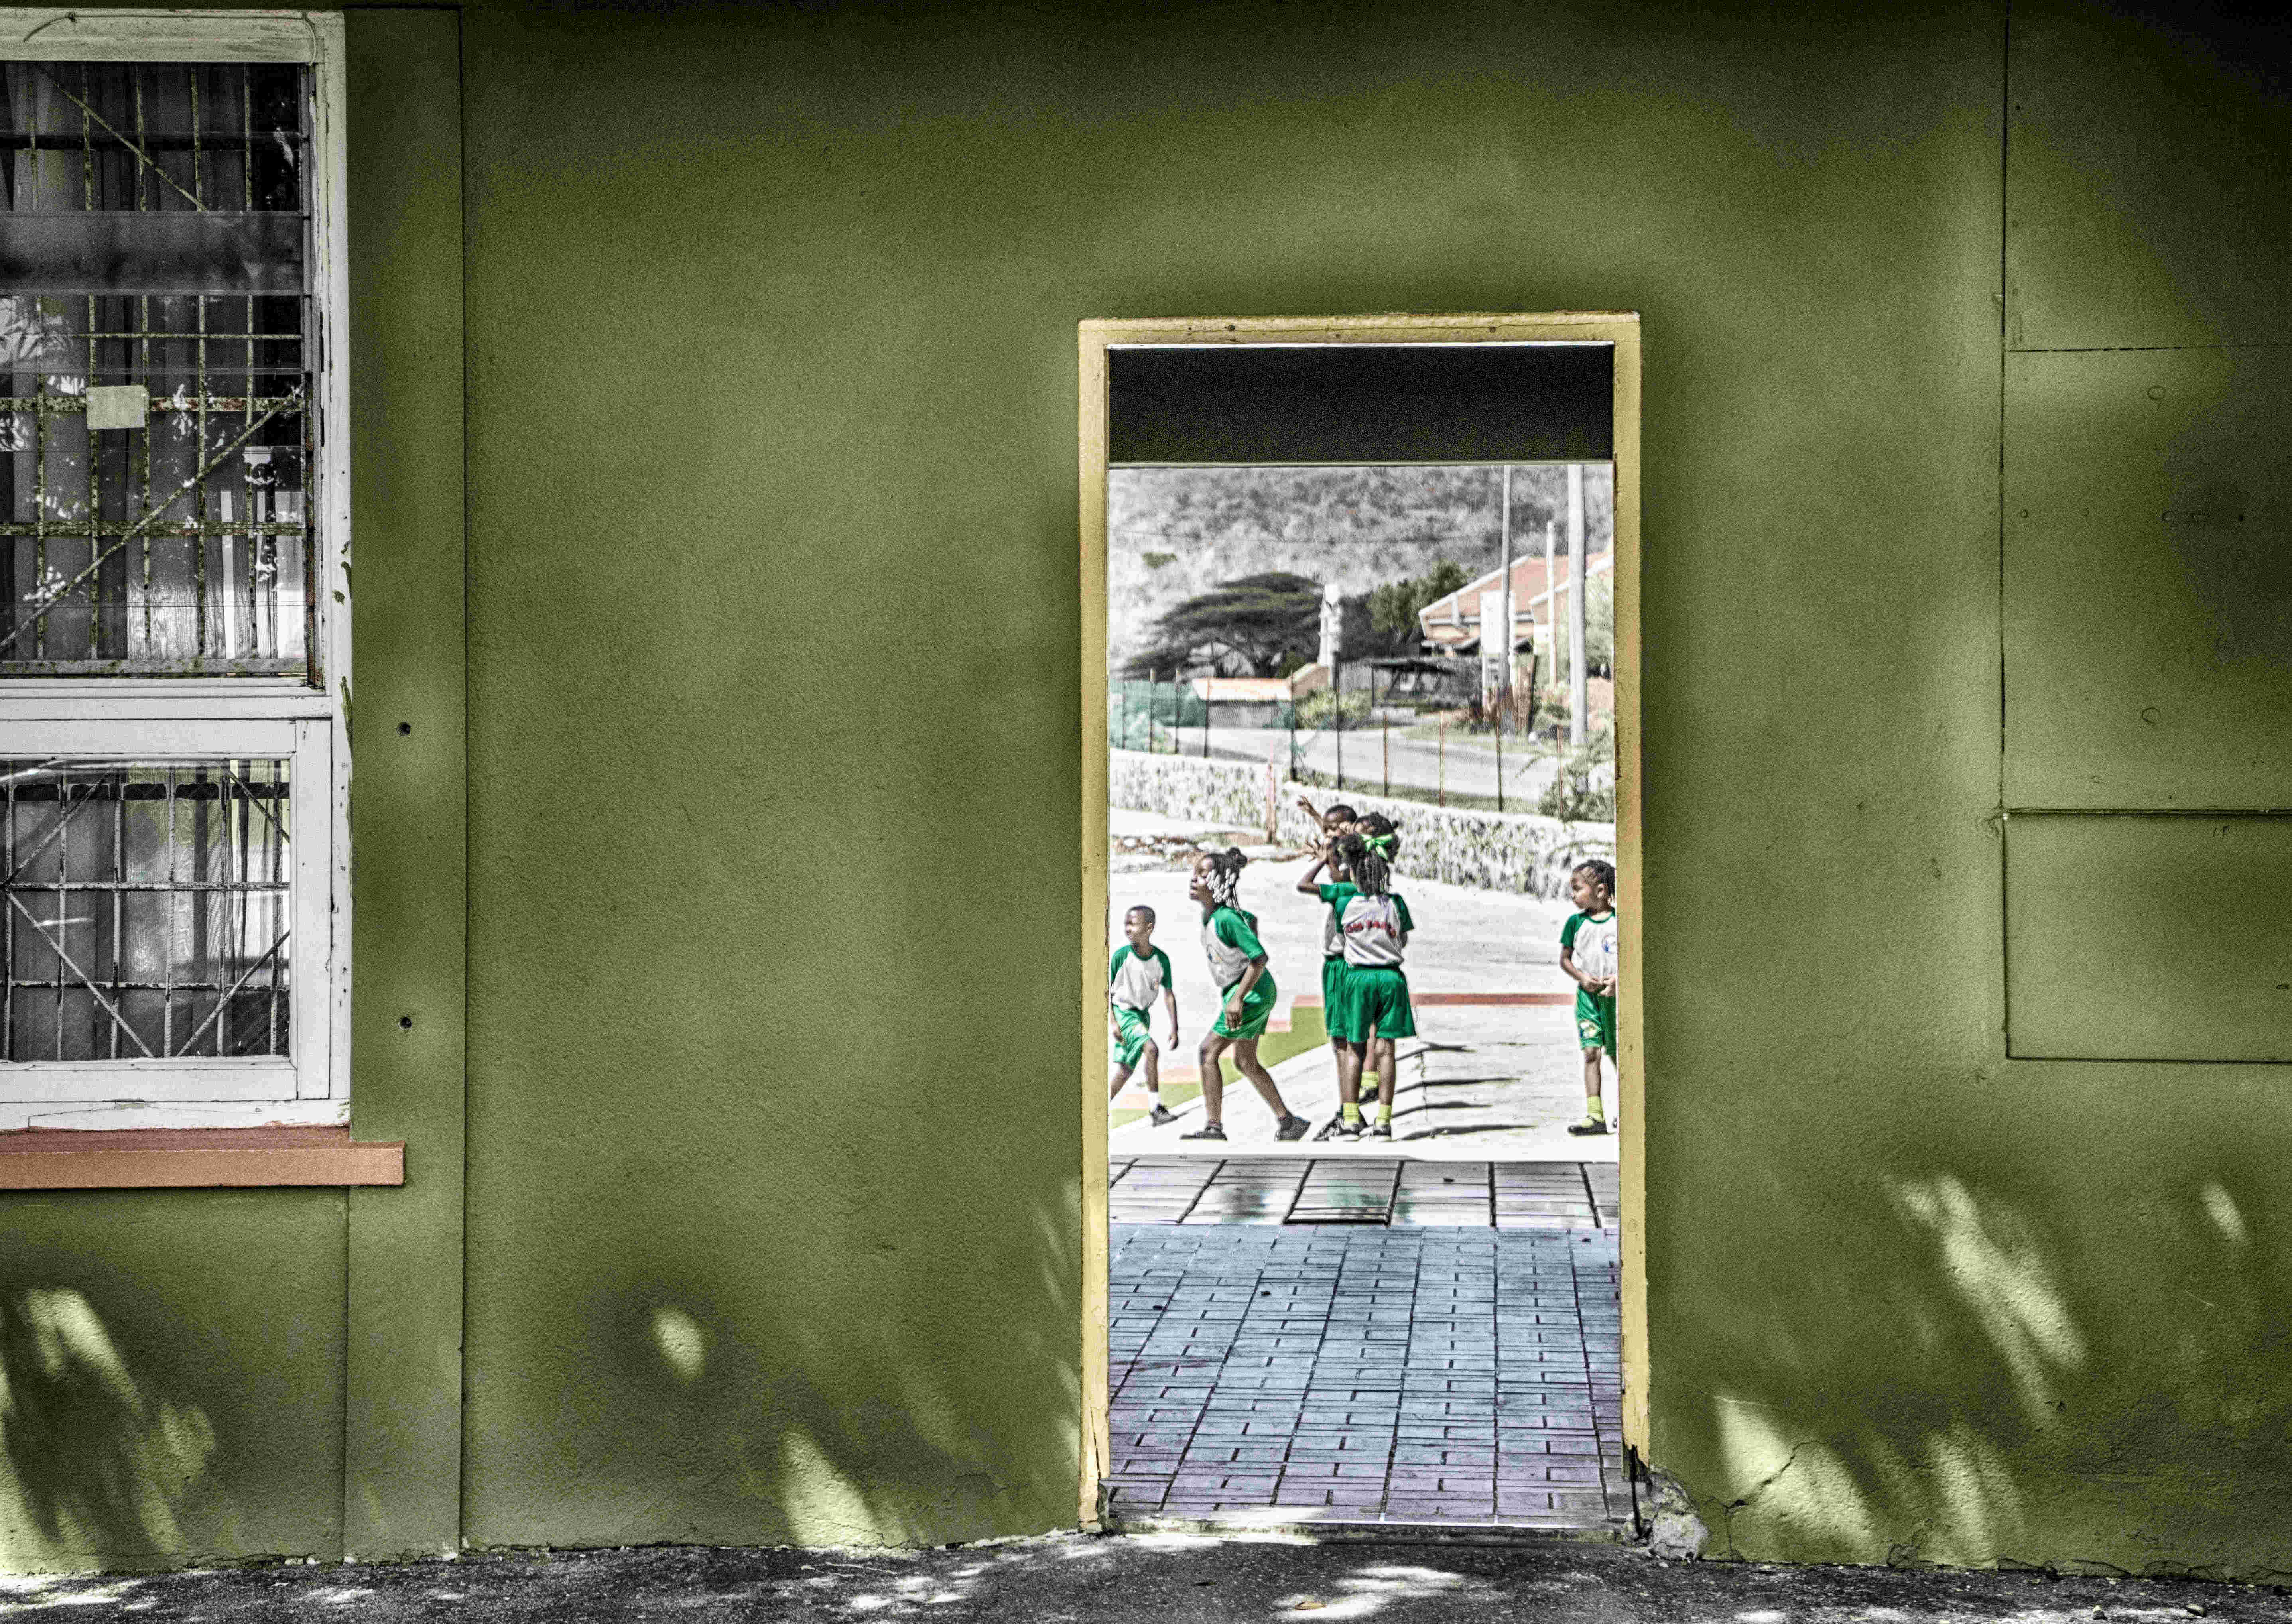 Curaçao-school-willemstad-sklaven-einwohner-hinterland-land und leute